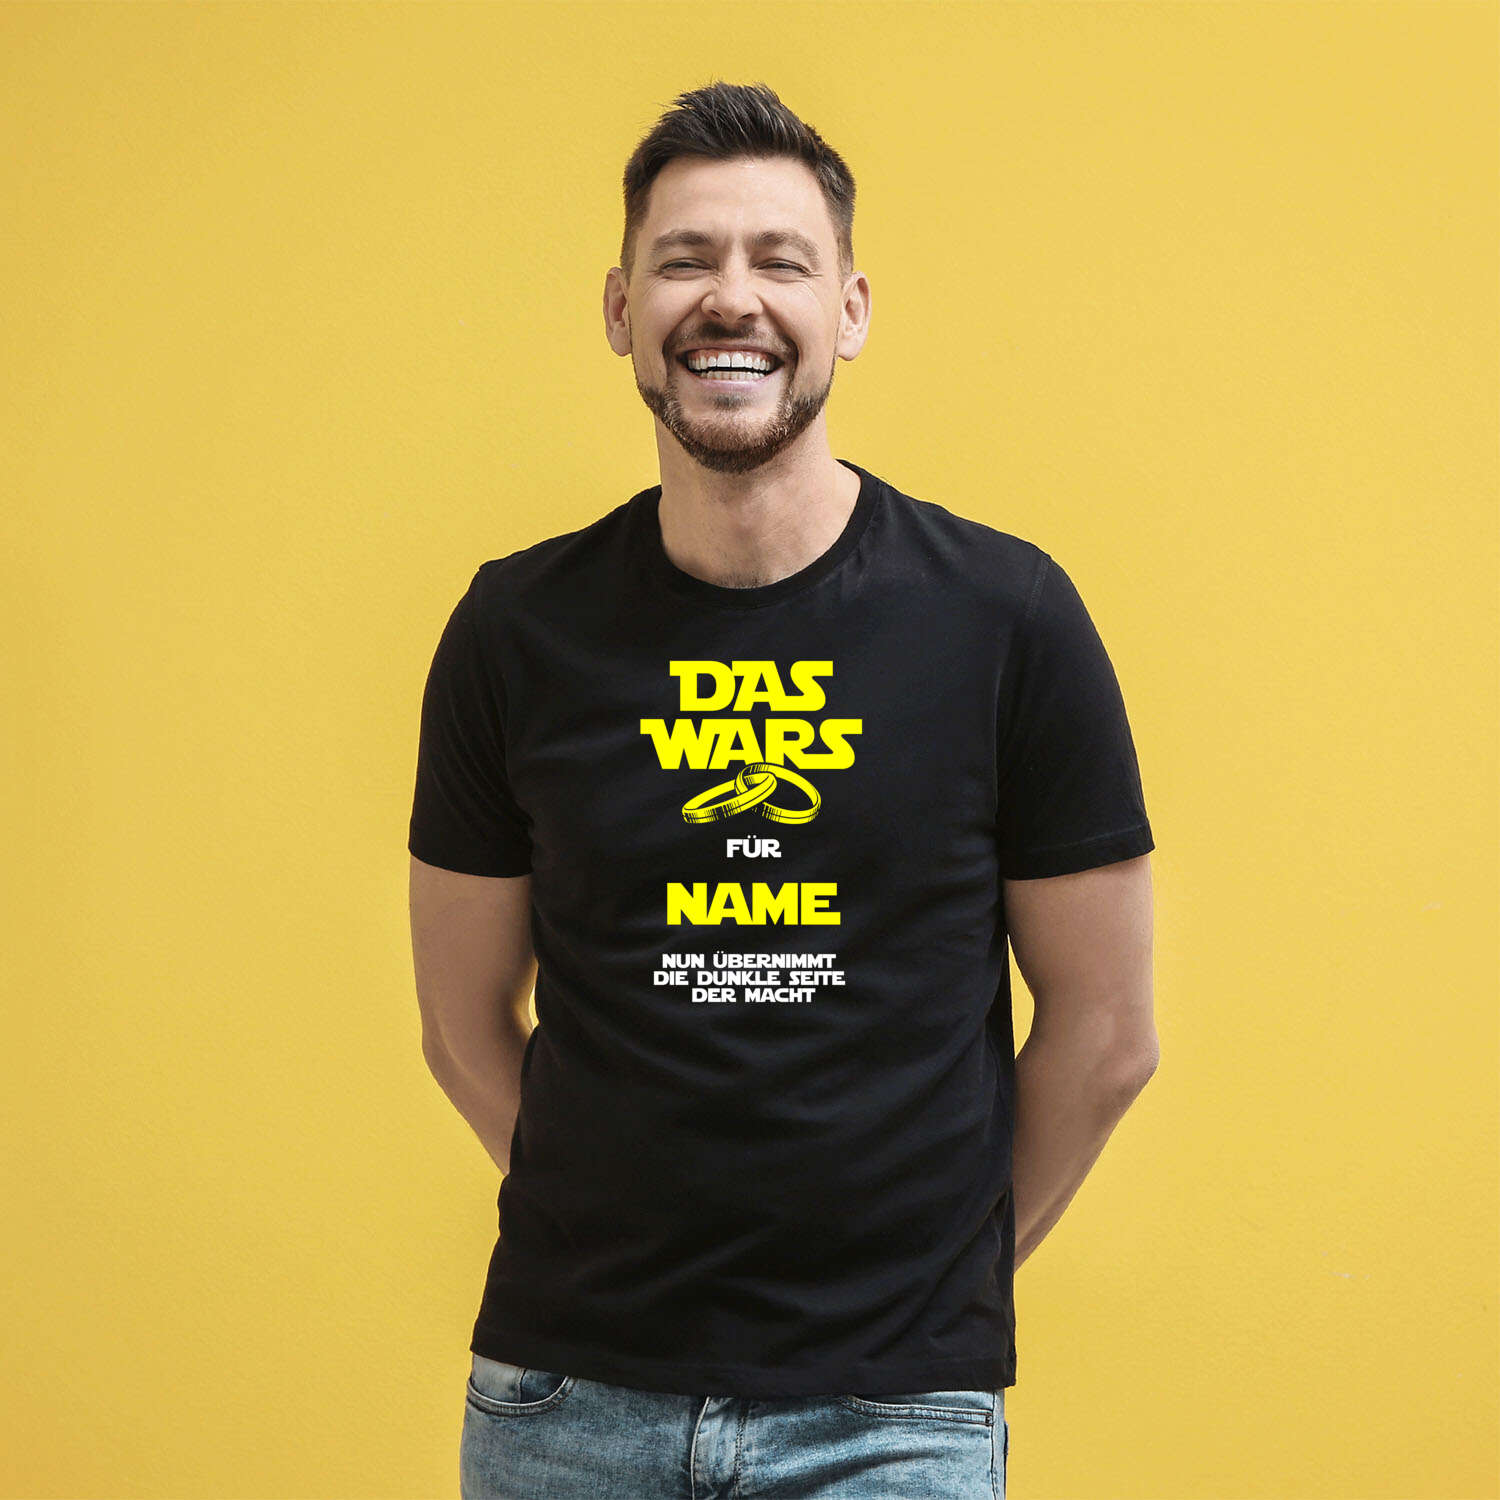 »Das wars« ... nun übernimmt die dunkle Seite! Star Wars inspiriertes JGA Shirt!